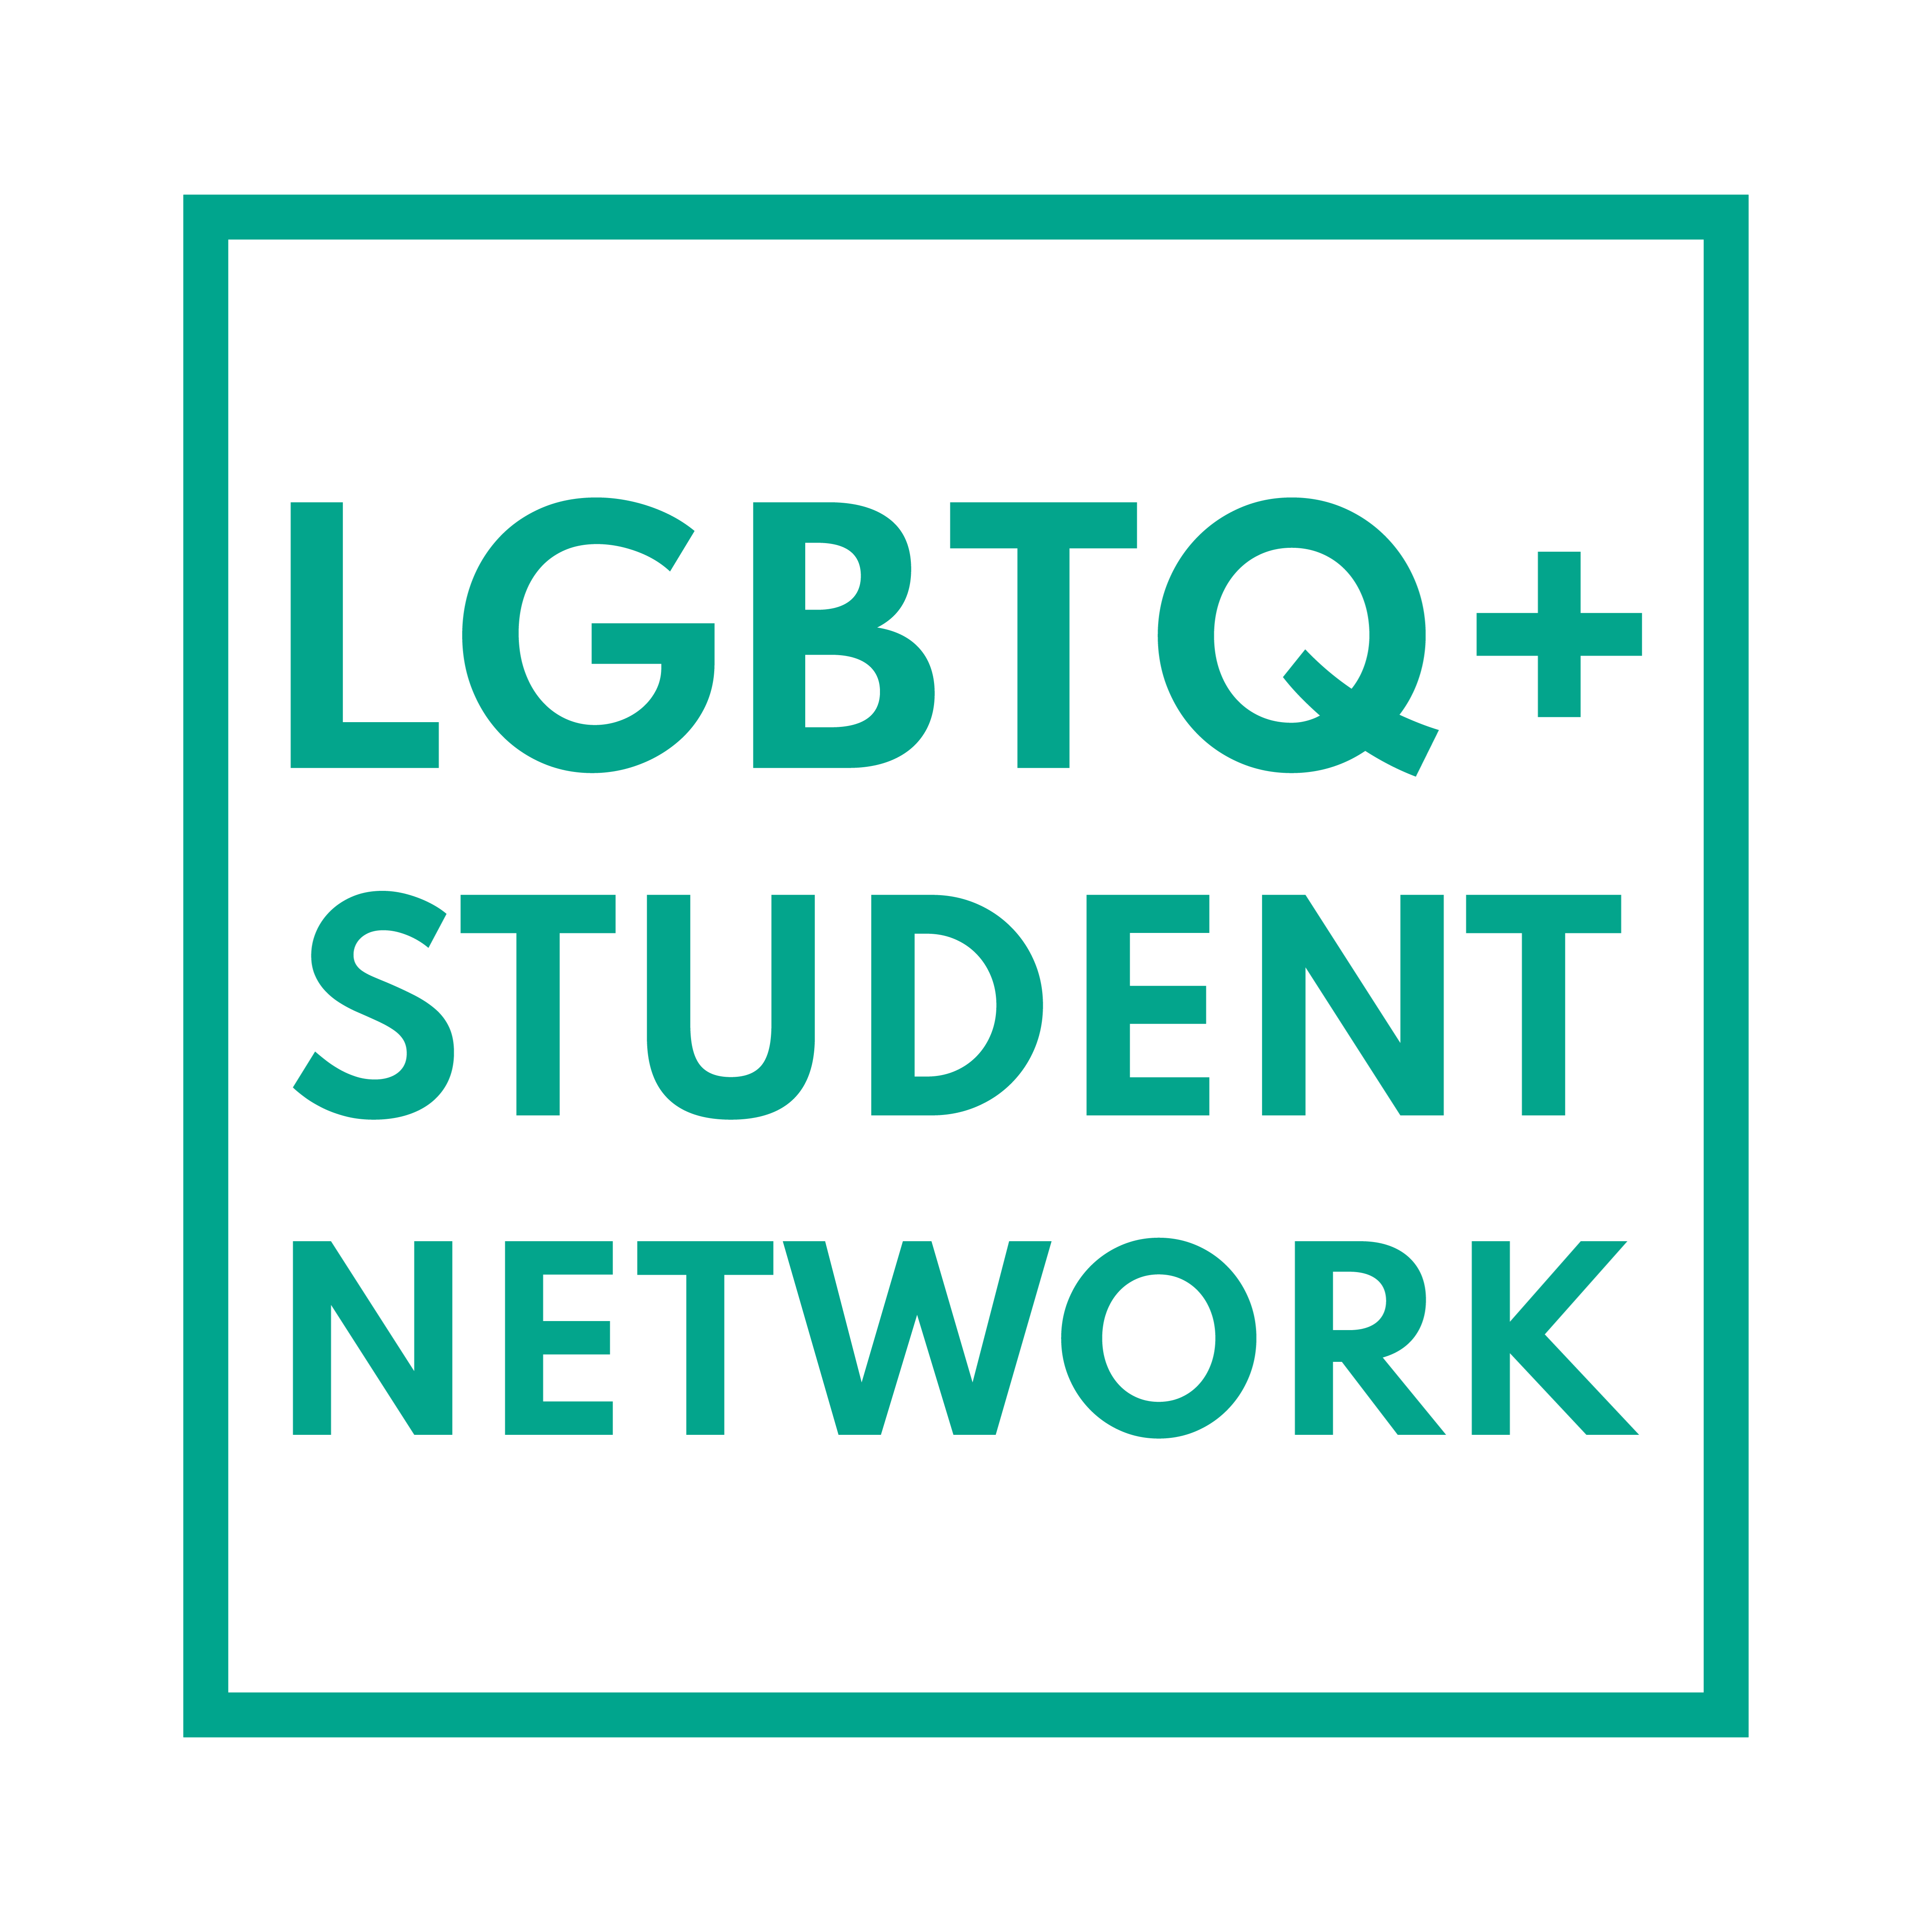 LGBTQ+ Student Network